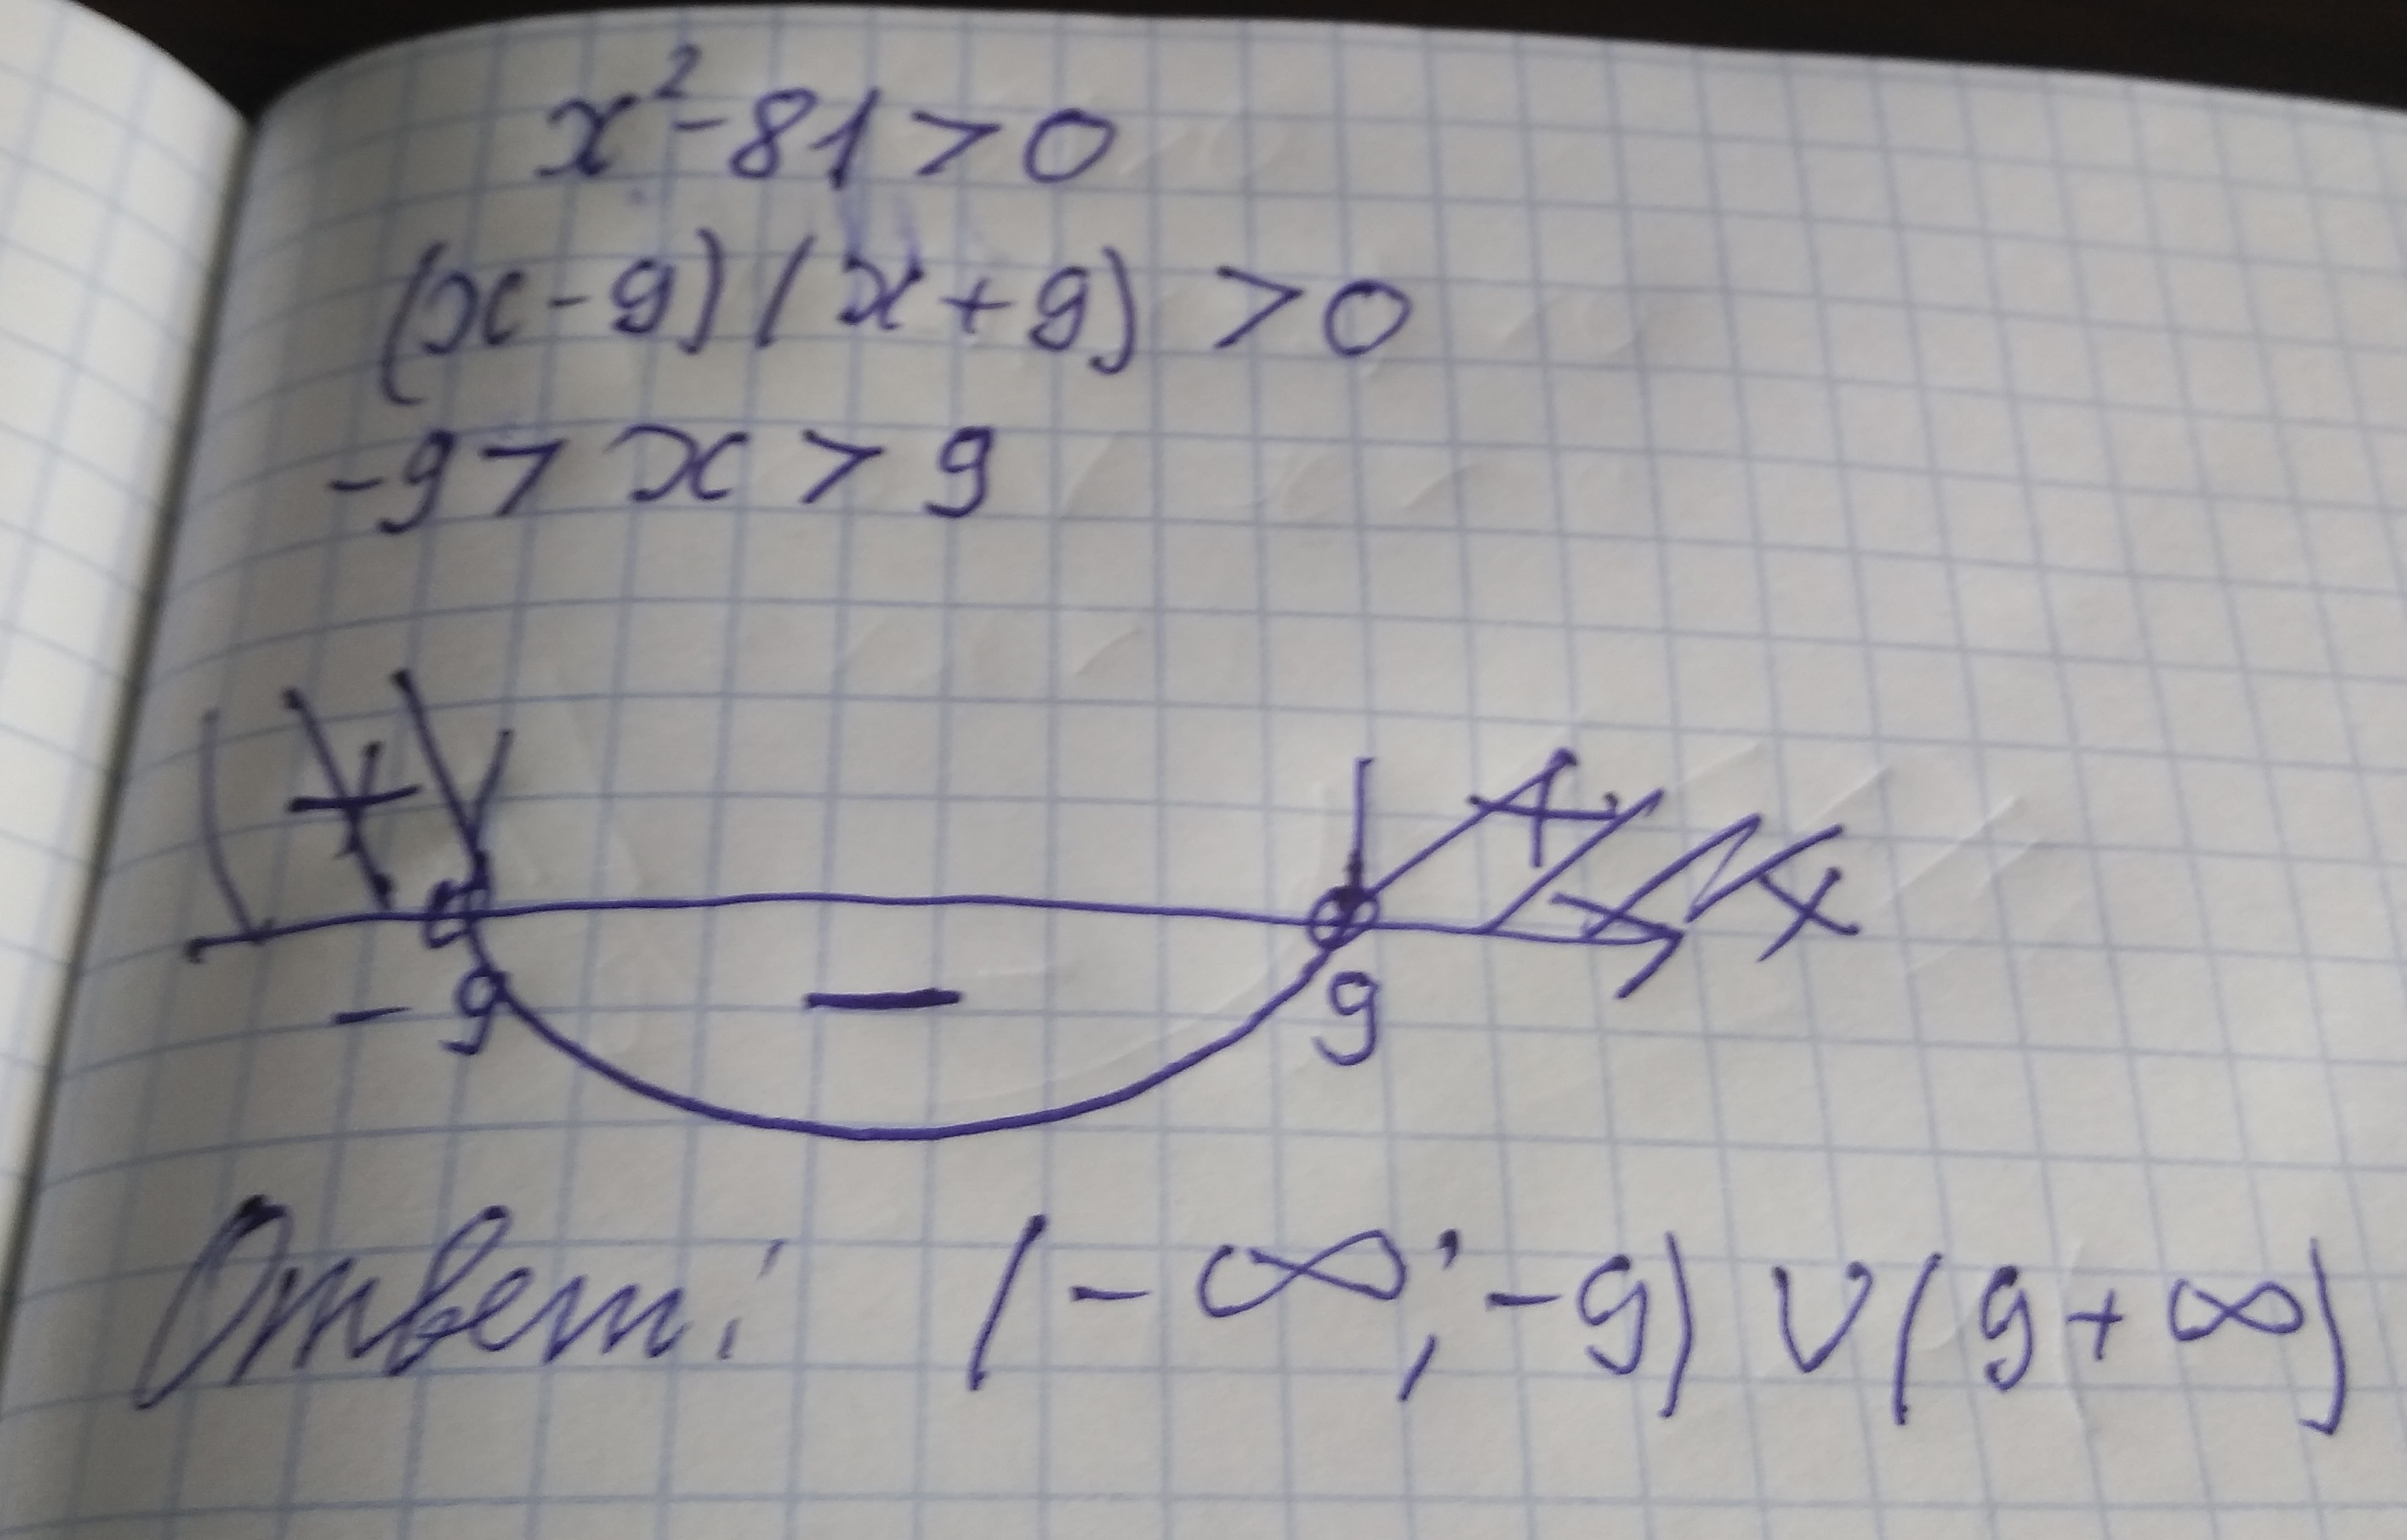 В квадрате минус 0 64. Решите неравенство x2 81. Неравенство x^2<81. X2-81=0. X^2>81 решение неравенства.